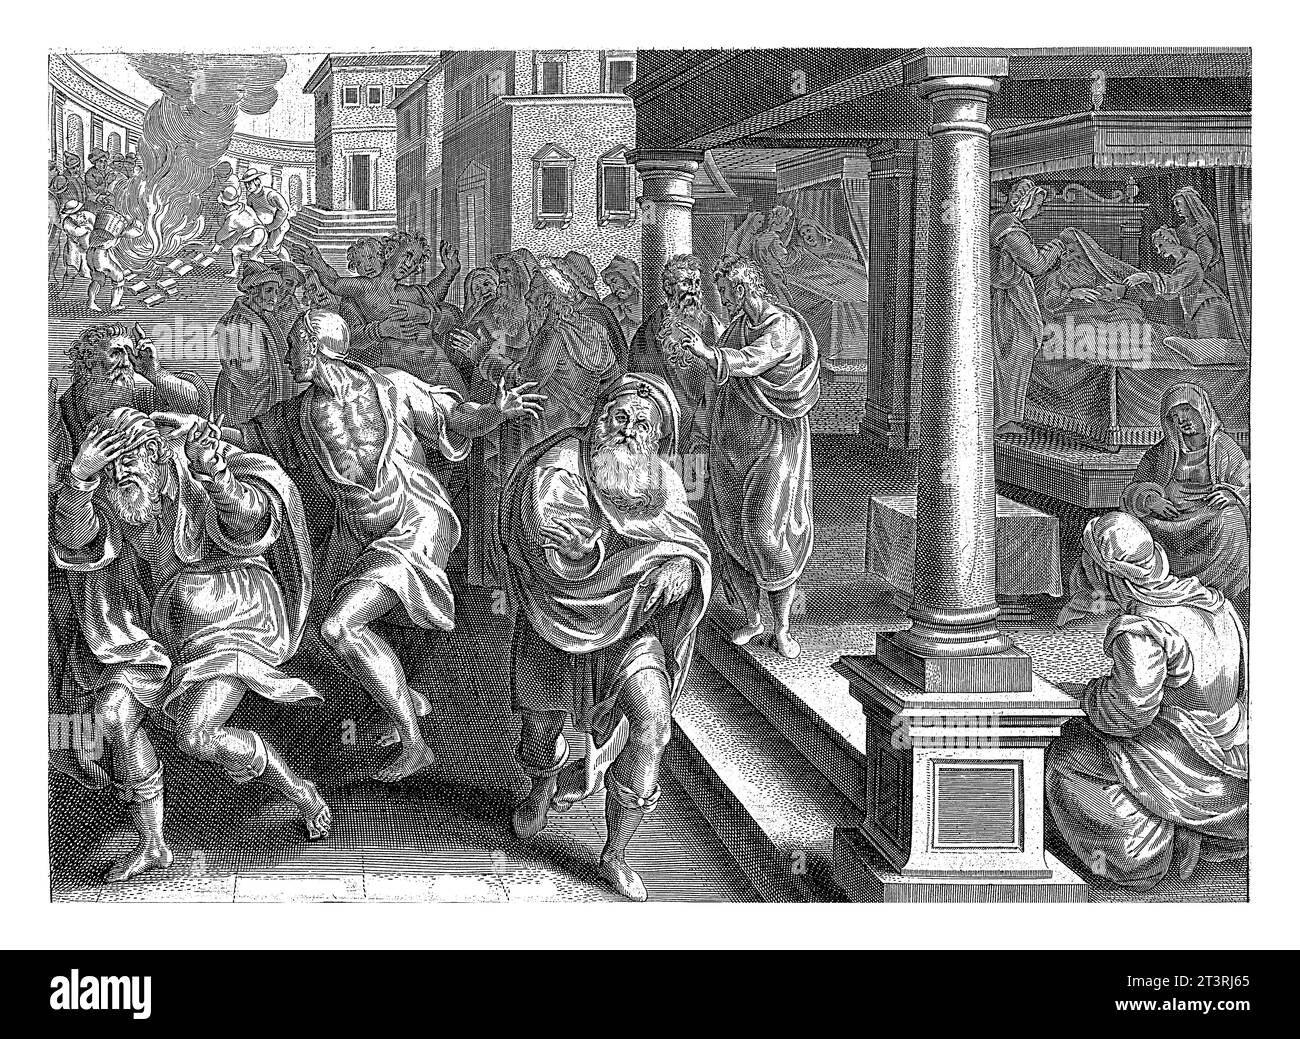 Paul und die Exorzisten von Ephesus, nach Philips Galle, nach Jan van der Straet, versuchen 1646 jüdische Exorzisten, nach Paul, einen bösen spiri zu exorzieren Stockfoto